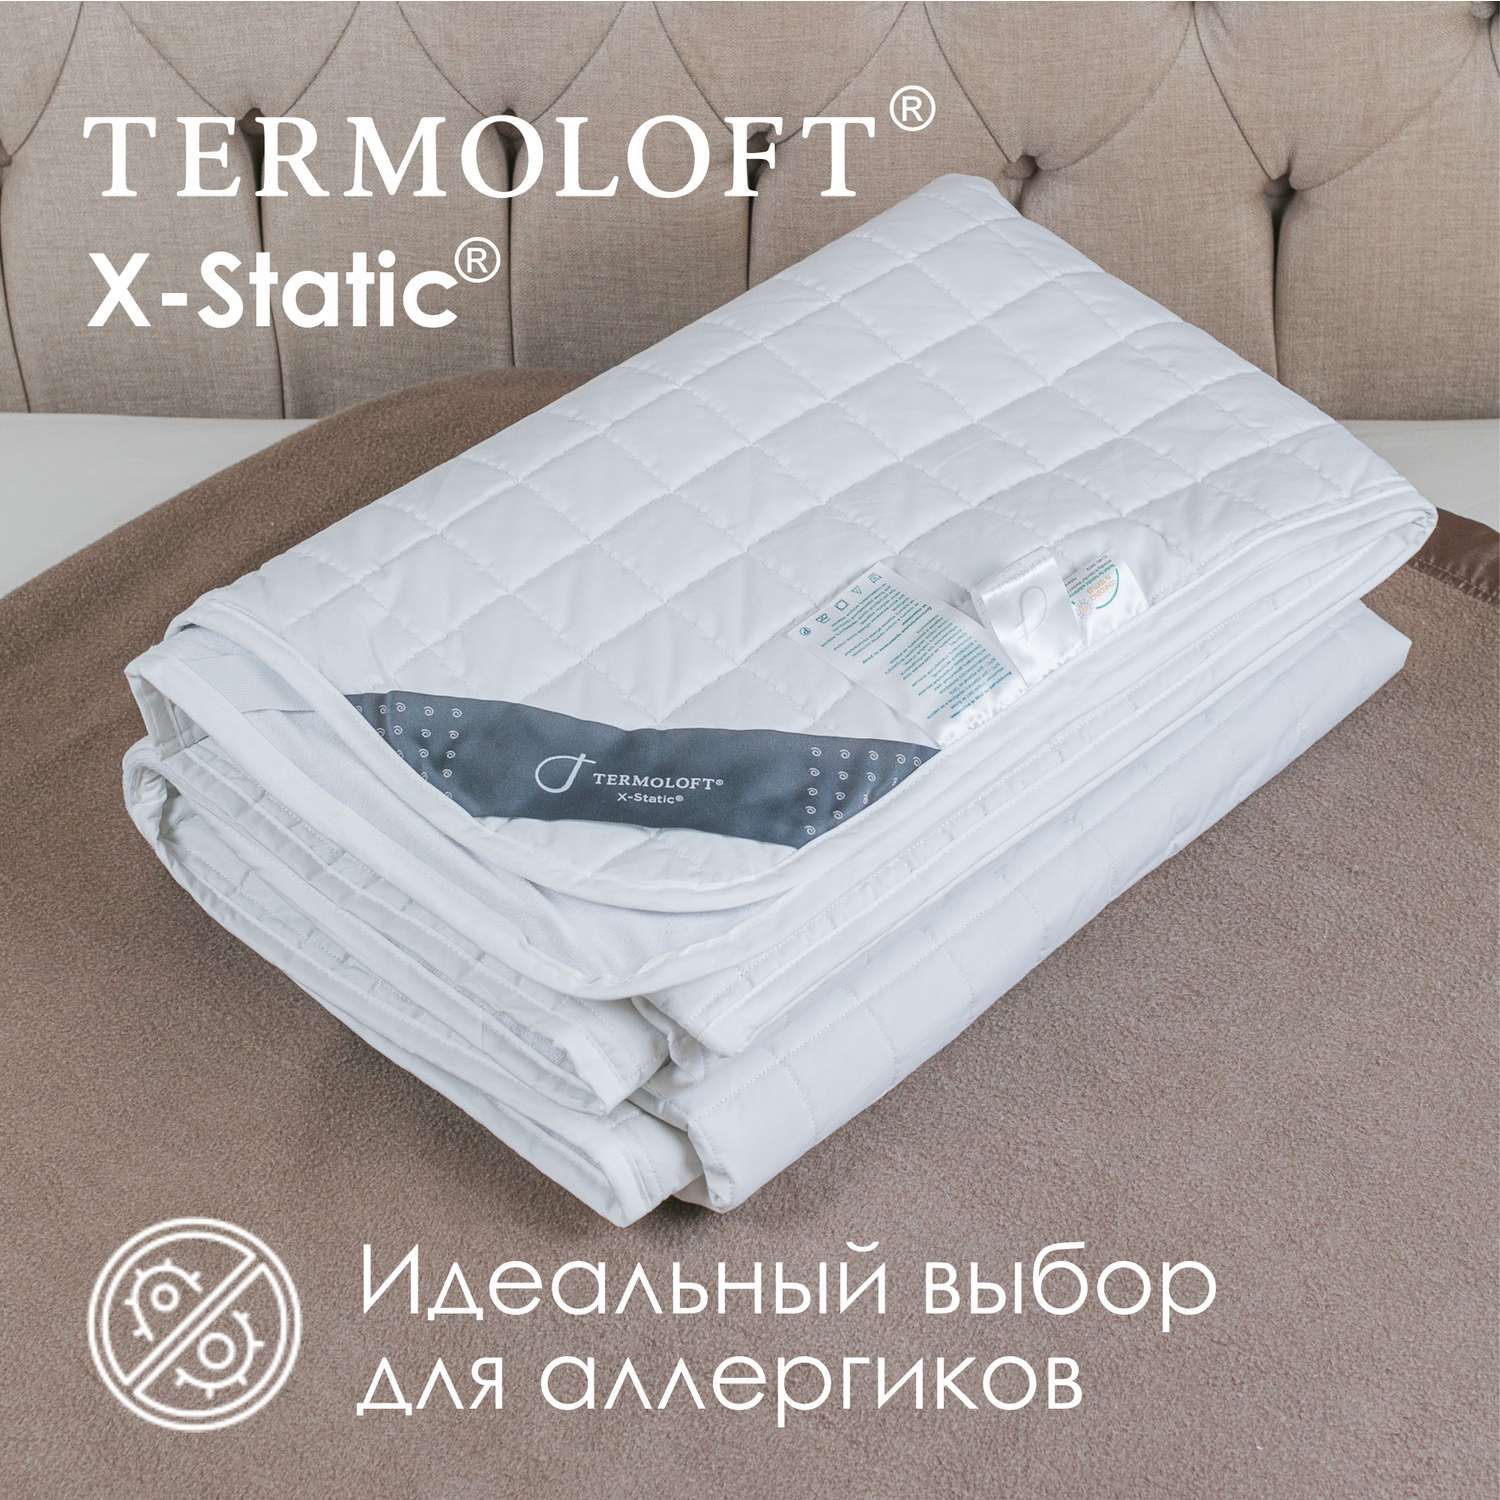 Наматрасник Termoloft X-Static с волокнами серебра 160х200 - фото 3